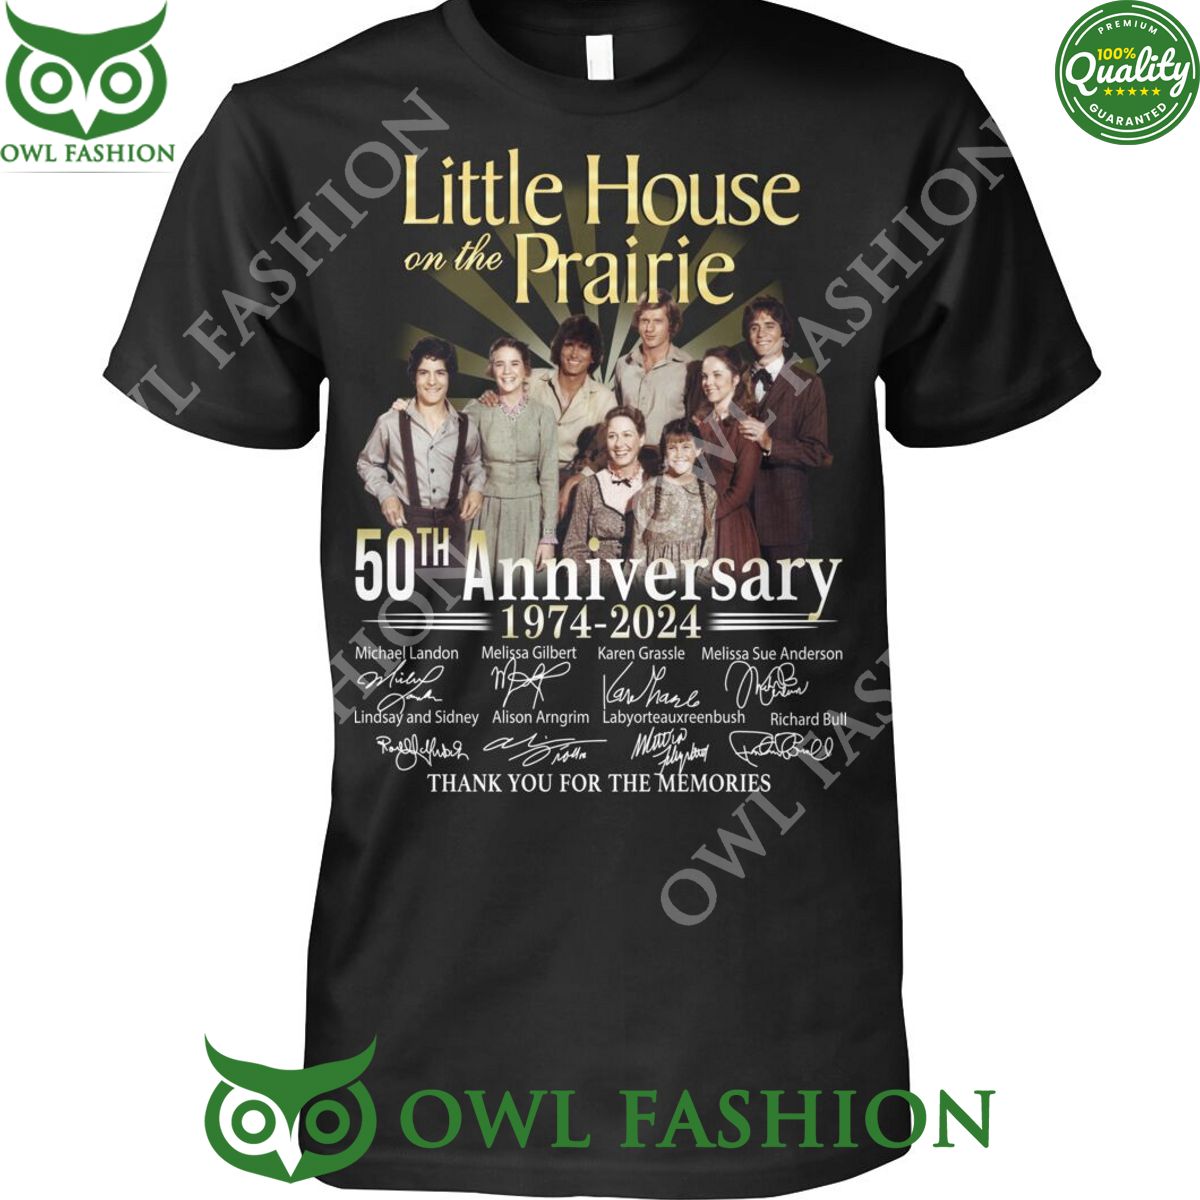 little house on prairie 1974 2024 50th anniversary memories 2d t shirt 1 PEAHN.jpg